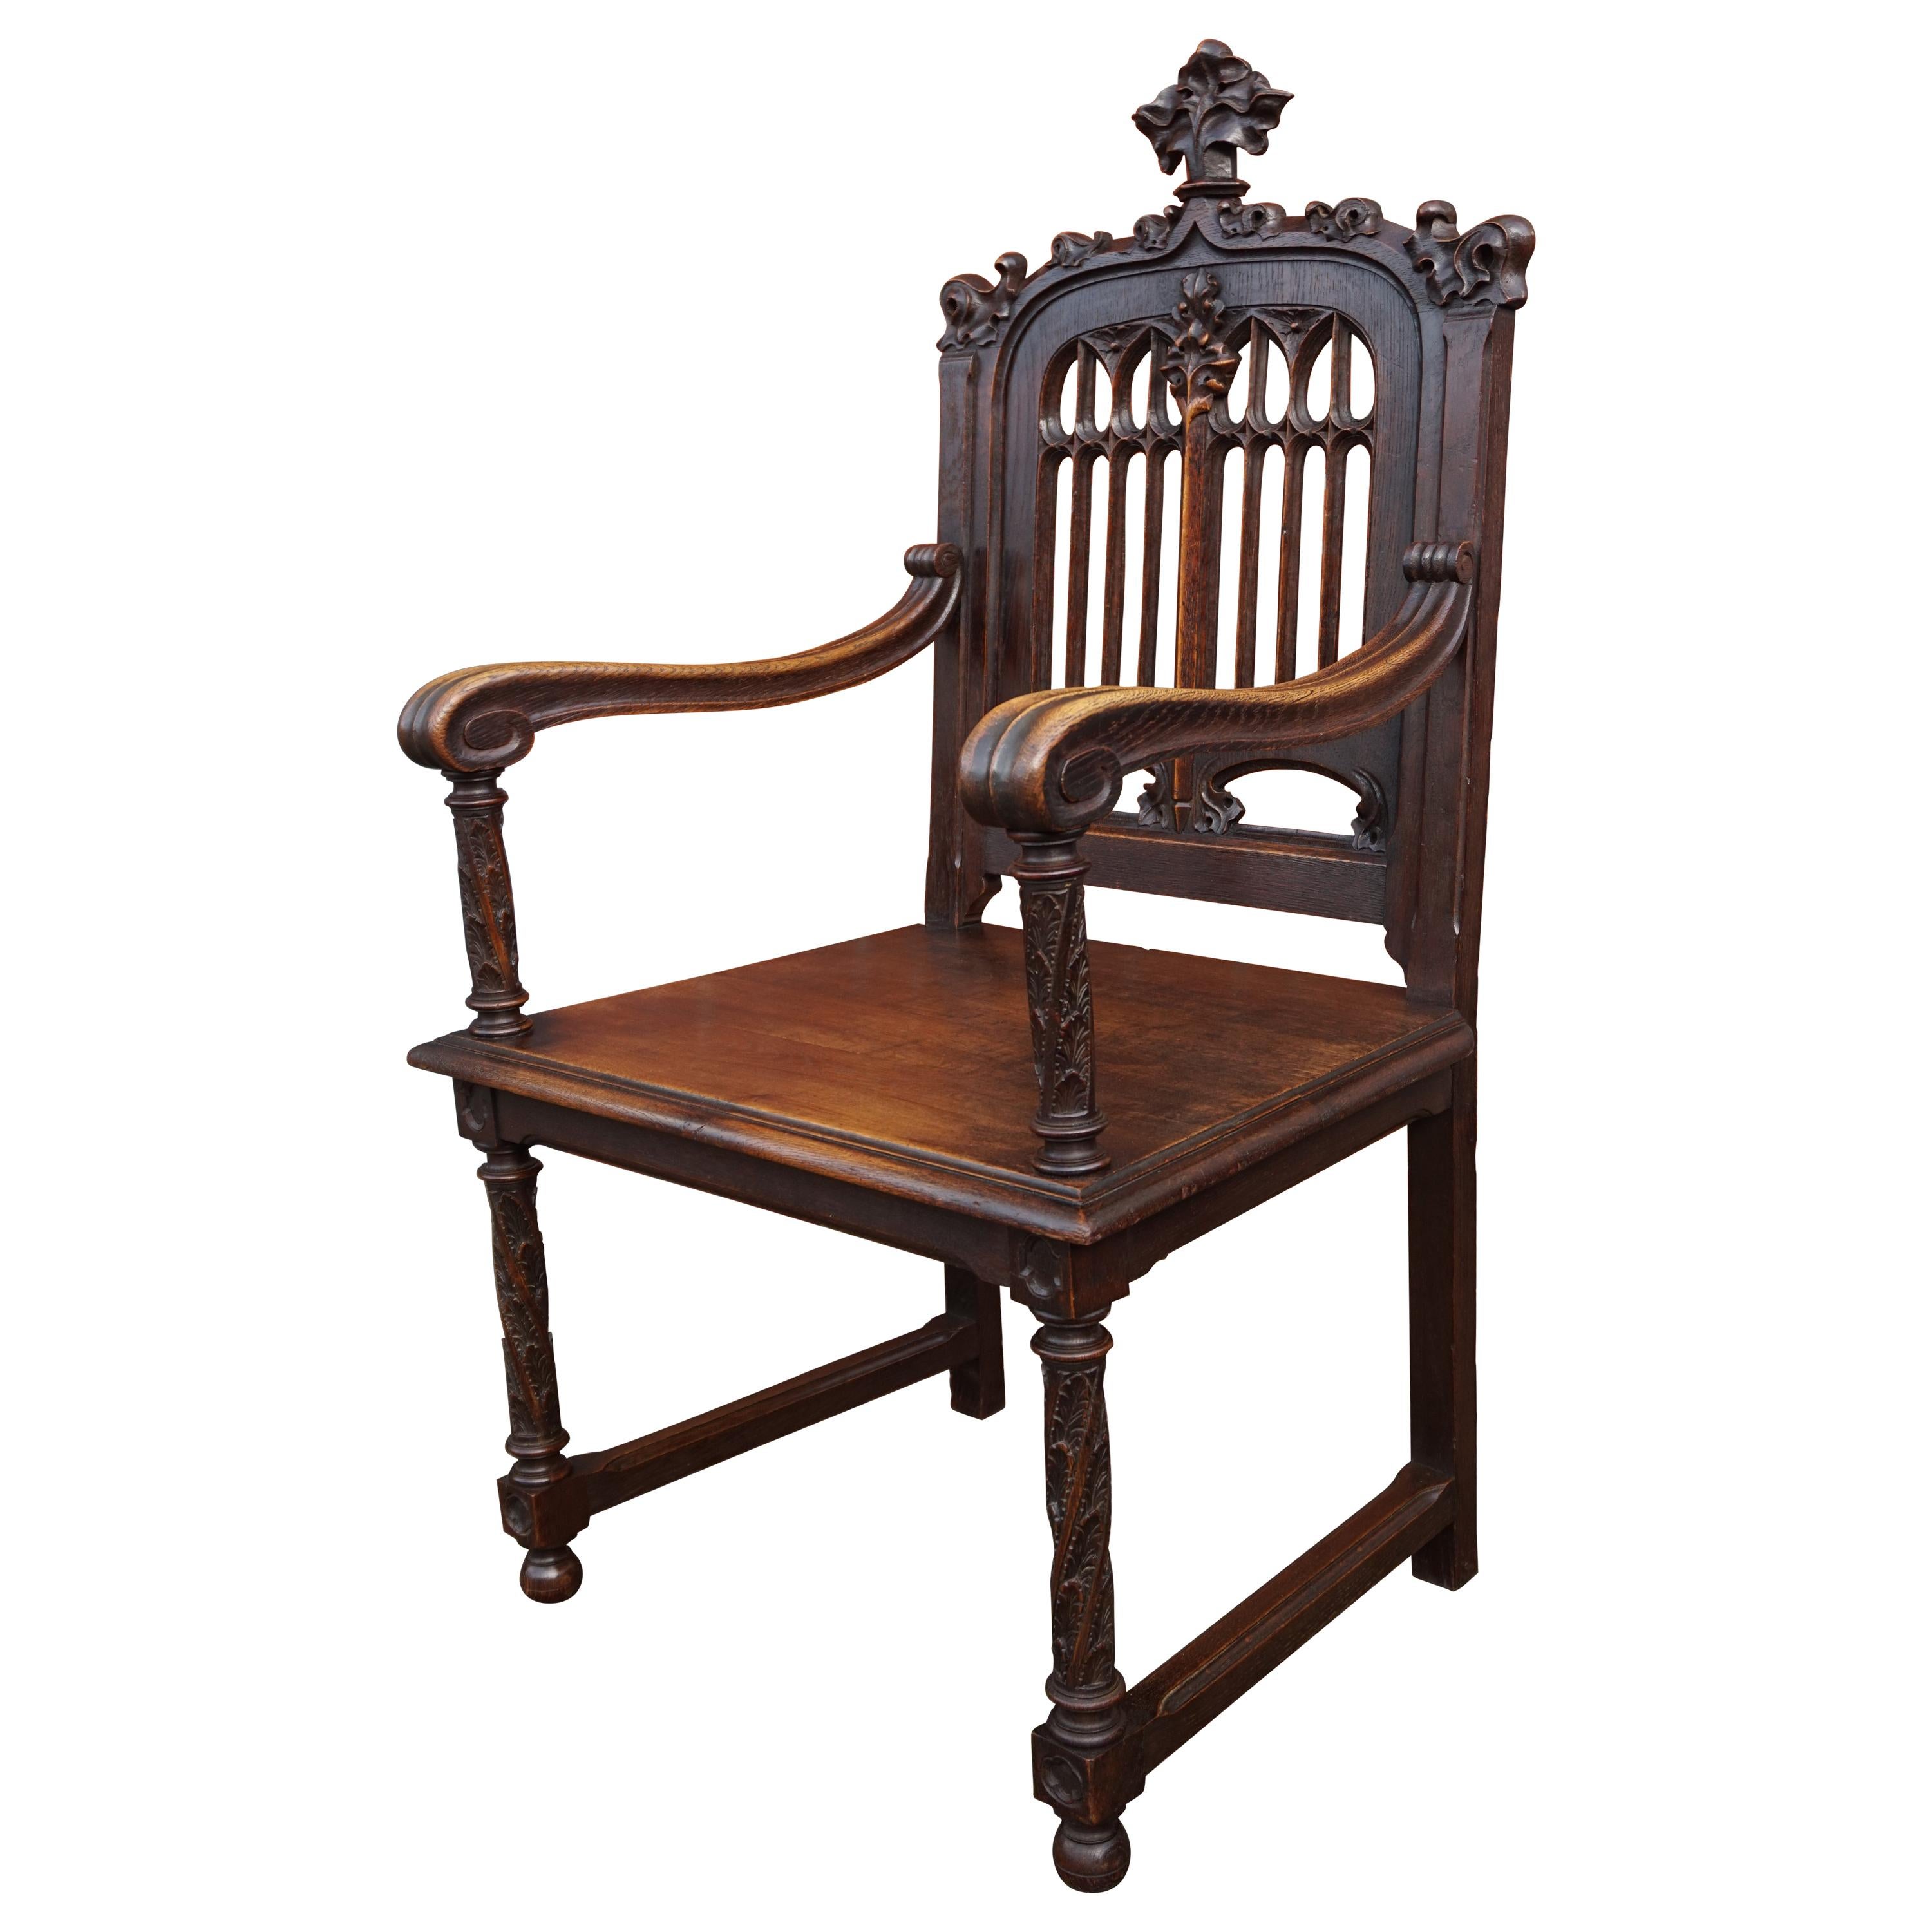 Chaise à bras Antique Revival parfaitement sculptée à la main et en superbe état